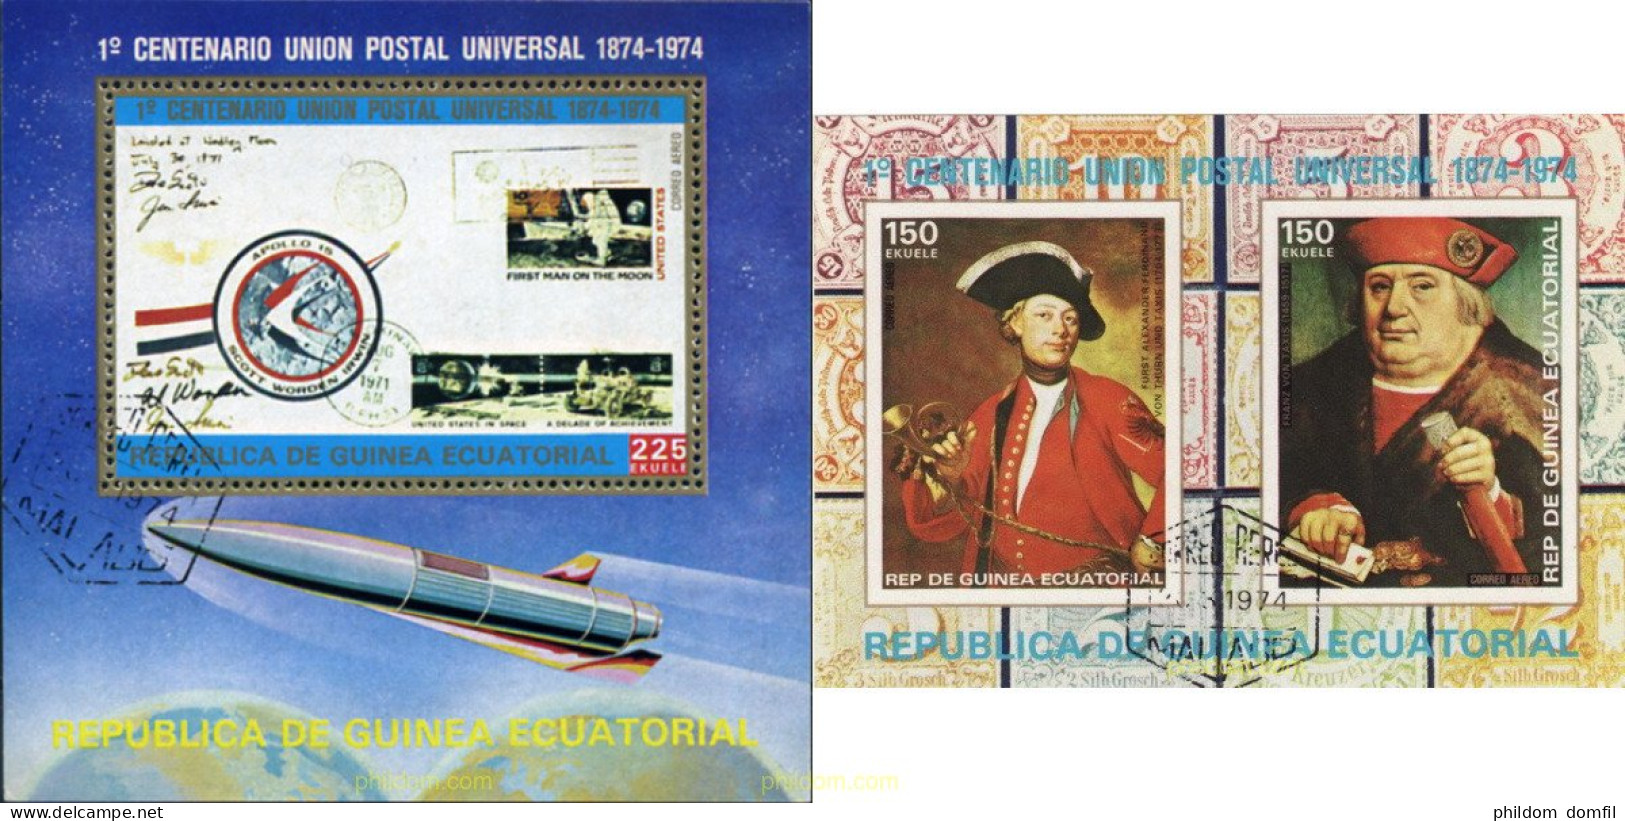 367392 USED GUINEA ECUATORIAL 1974 CENTENARIO DE LA UNION POSTAL UNIVERSAL - Equatoriaal Guinea